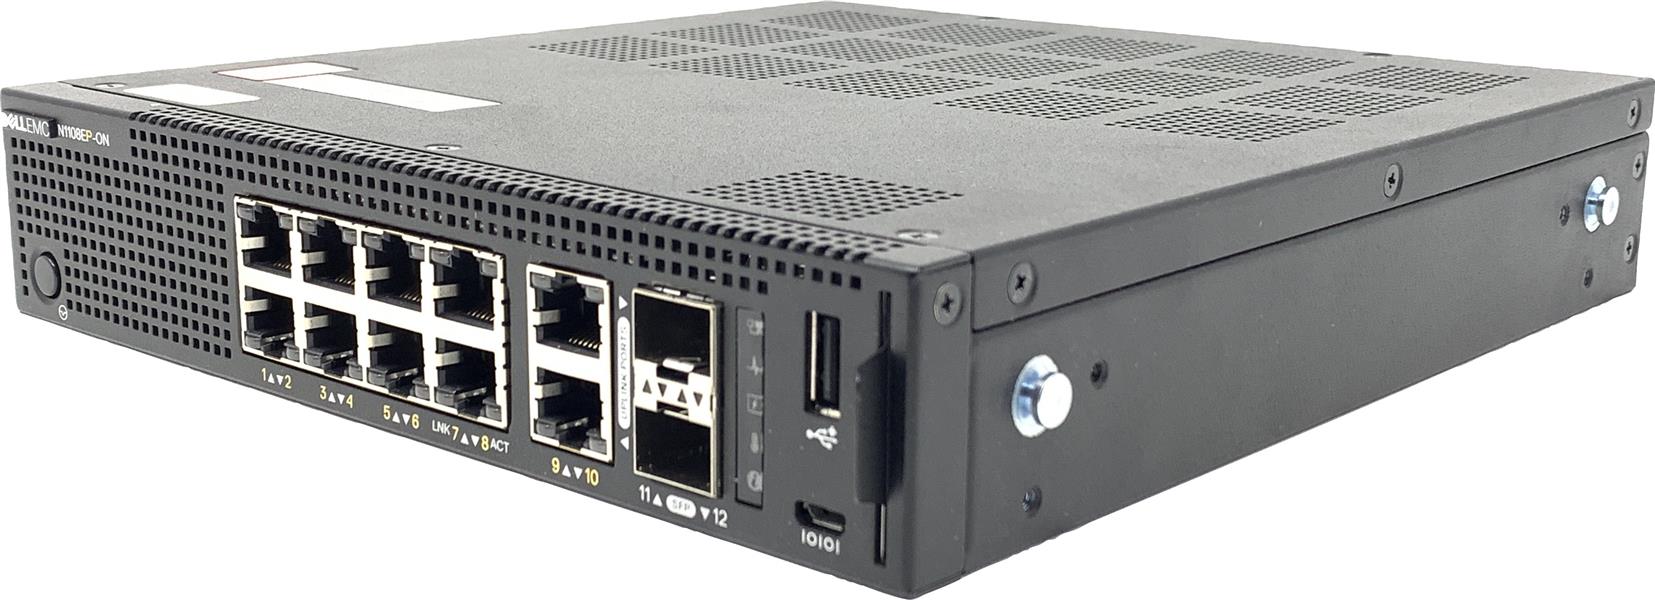 DELL N-Series N1108EP-ON Managed L2 Gigabit Ethernet (10/100/1000) Power over Ethernet (PoE) 1U Zwart